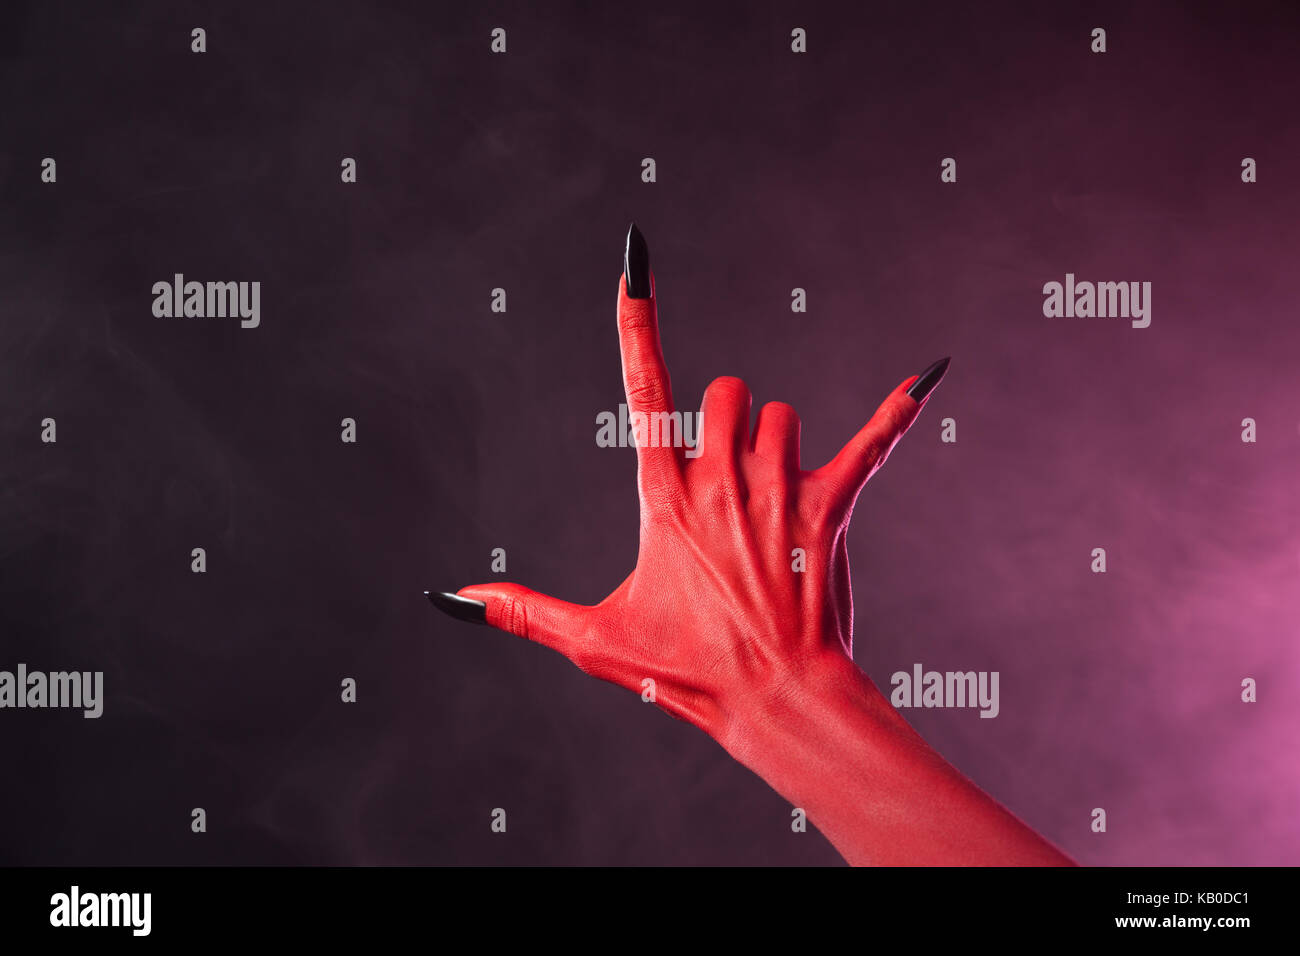 Devil hand immagini e fotografie stock ad alta risoluzione - Alamy